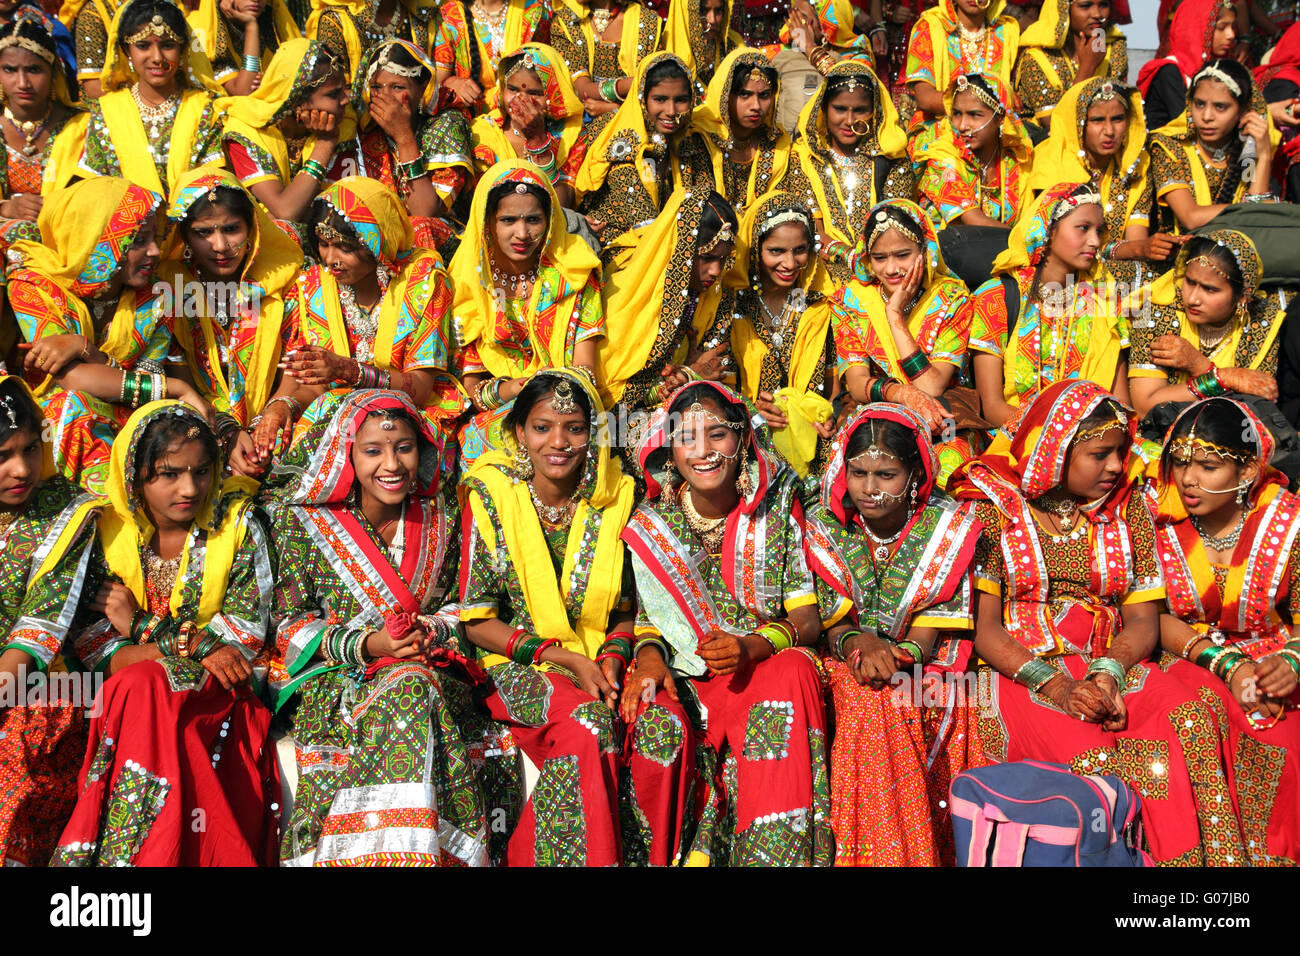 Groupe de filles indiennes dans une tenue ethnique coloré Banque D'Images